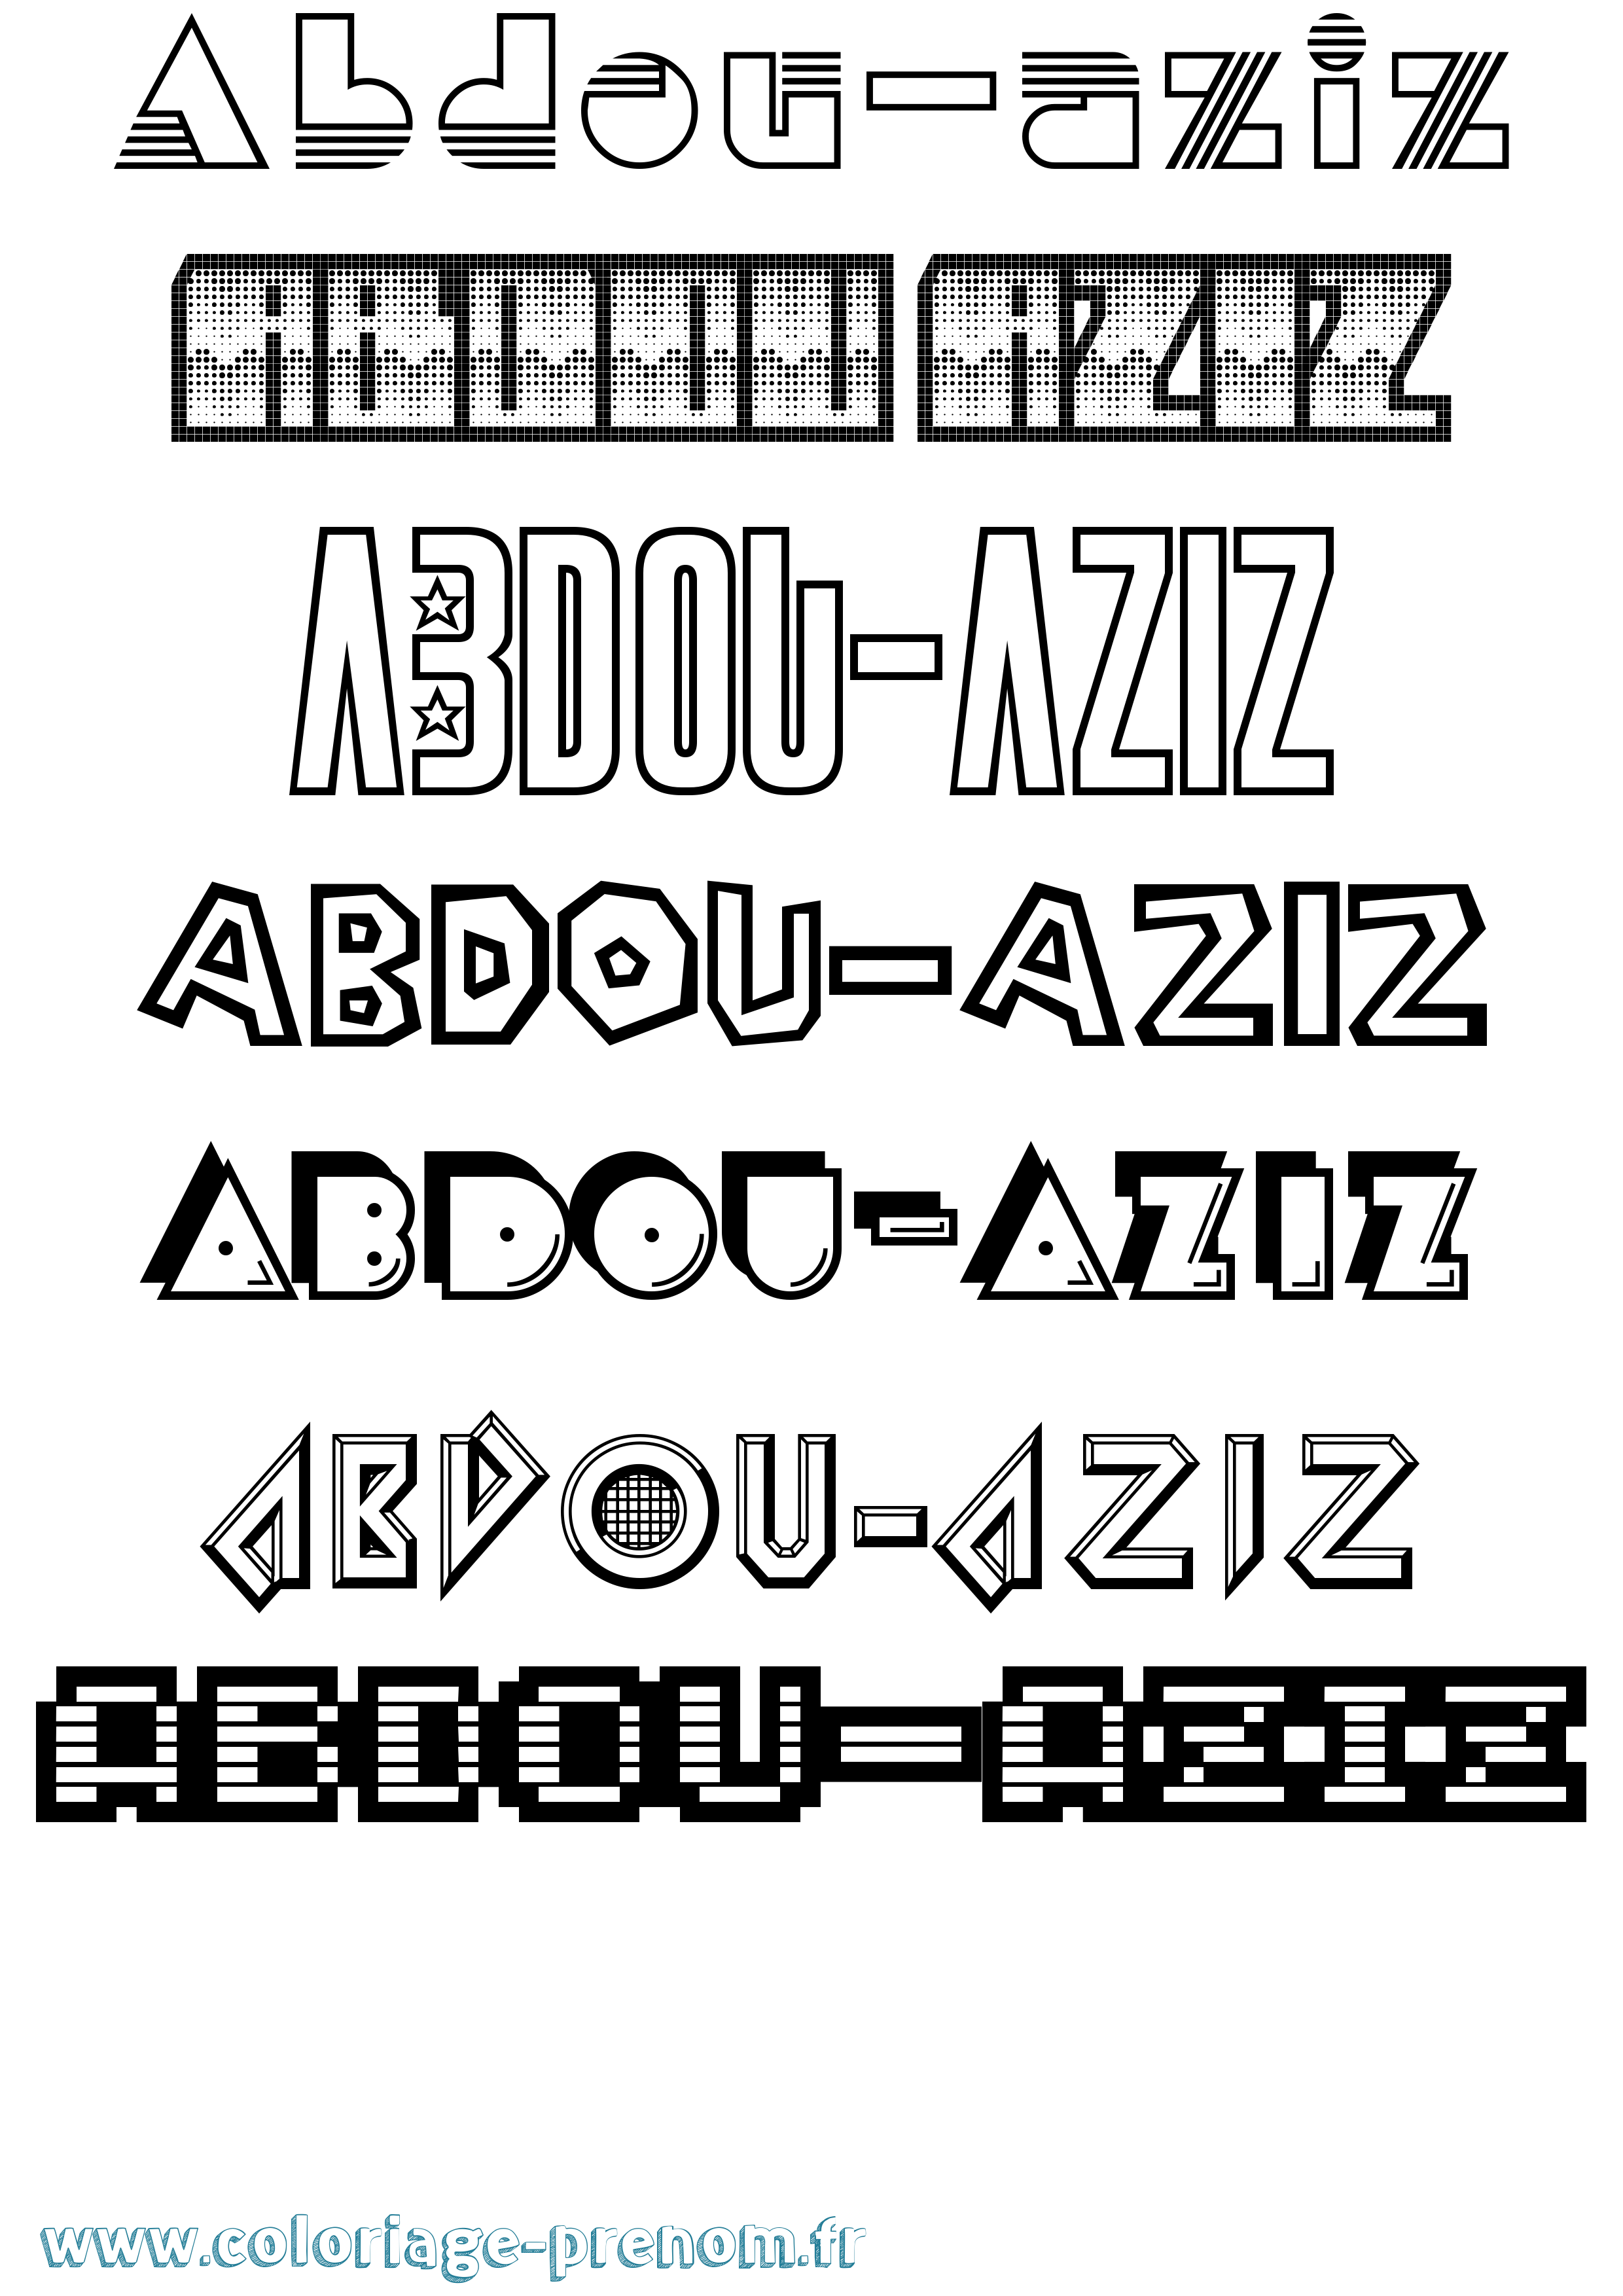 Coloriage prénom Abdou-Aziz Jeux Vidéos